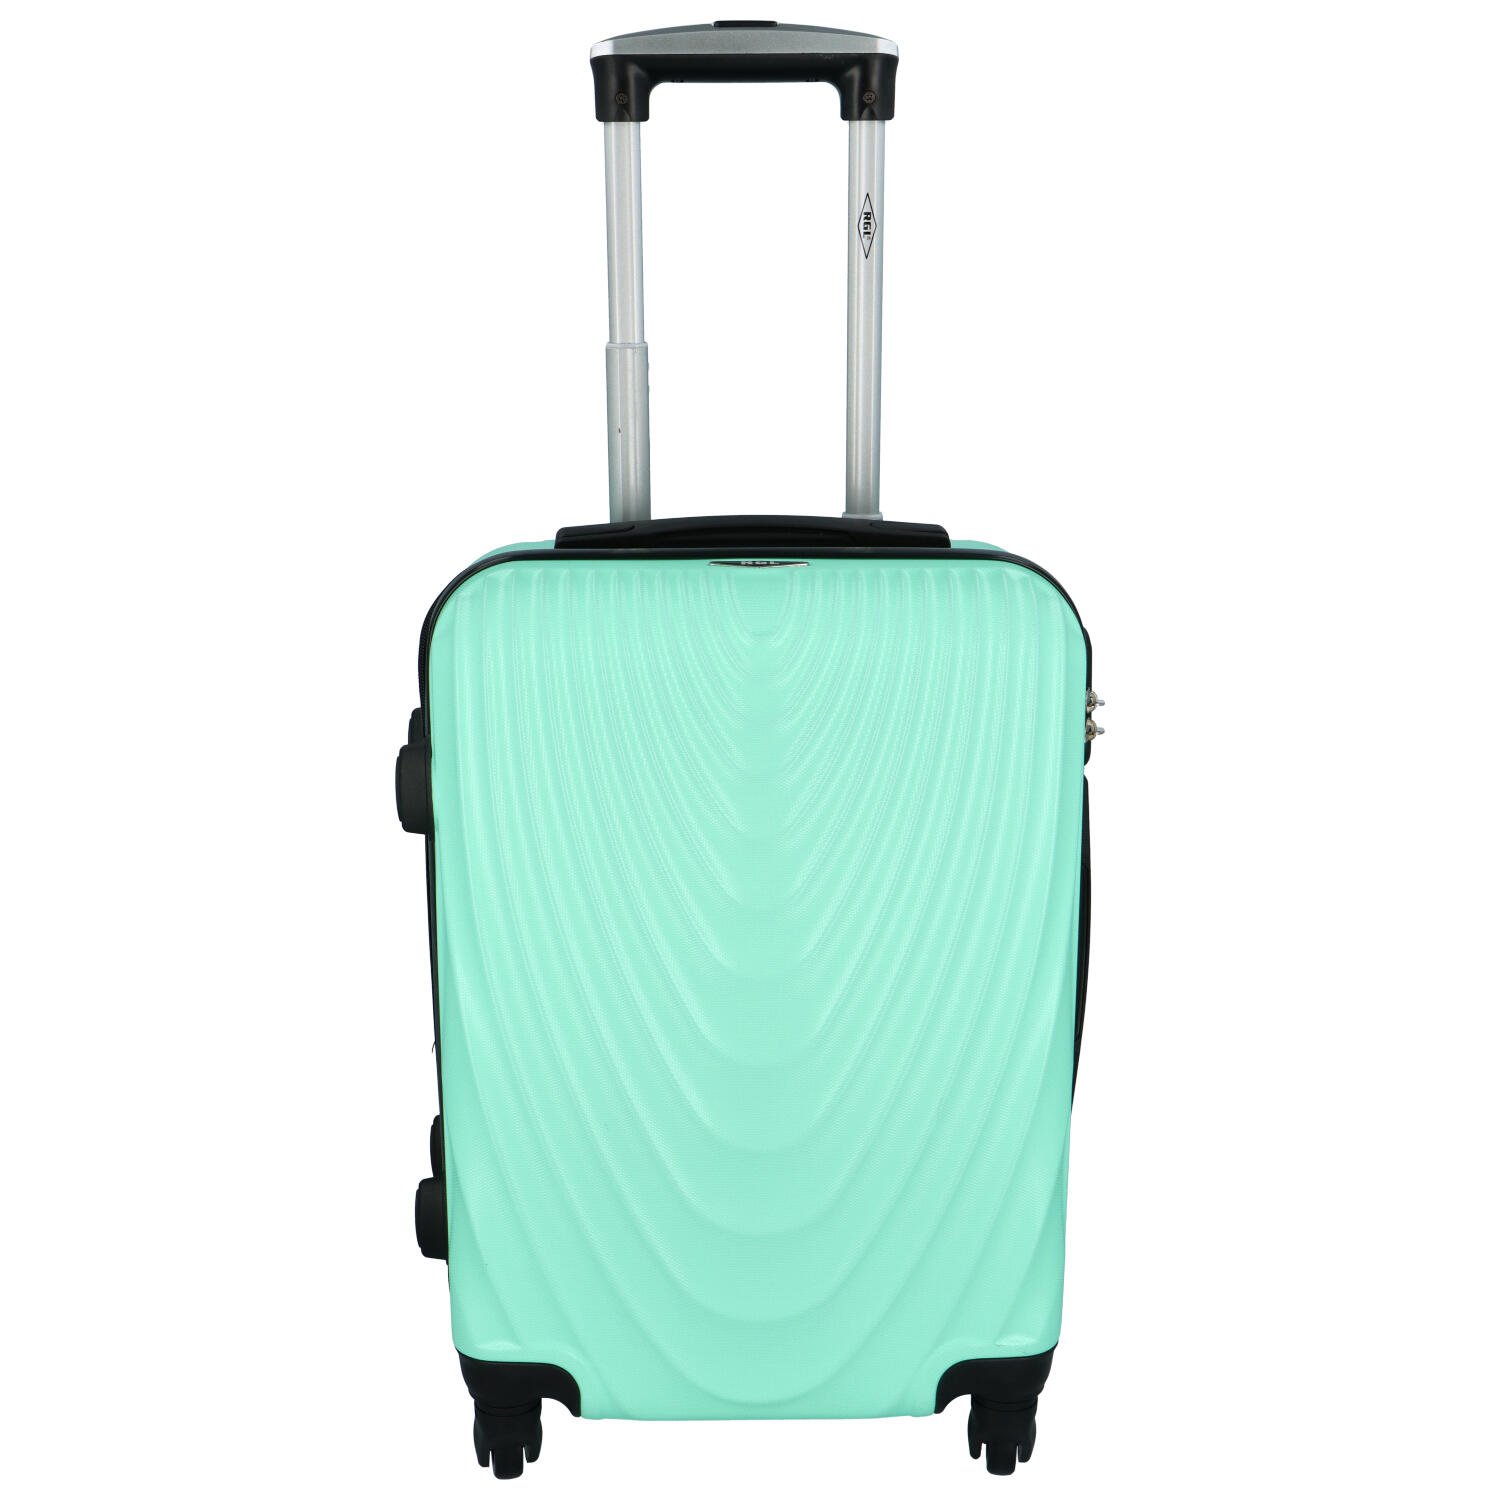 Originální pevný kufr světlý mentolově zelený - RGL Fiona S